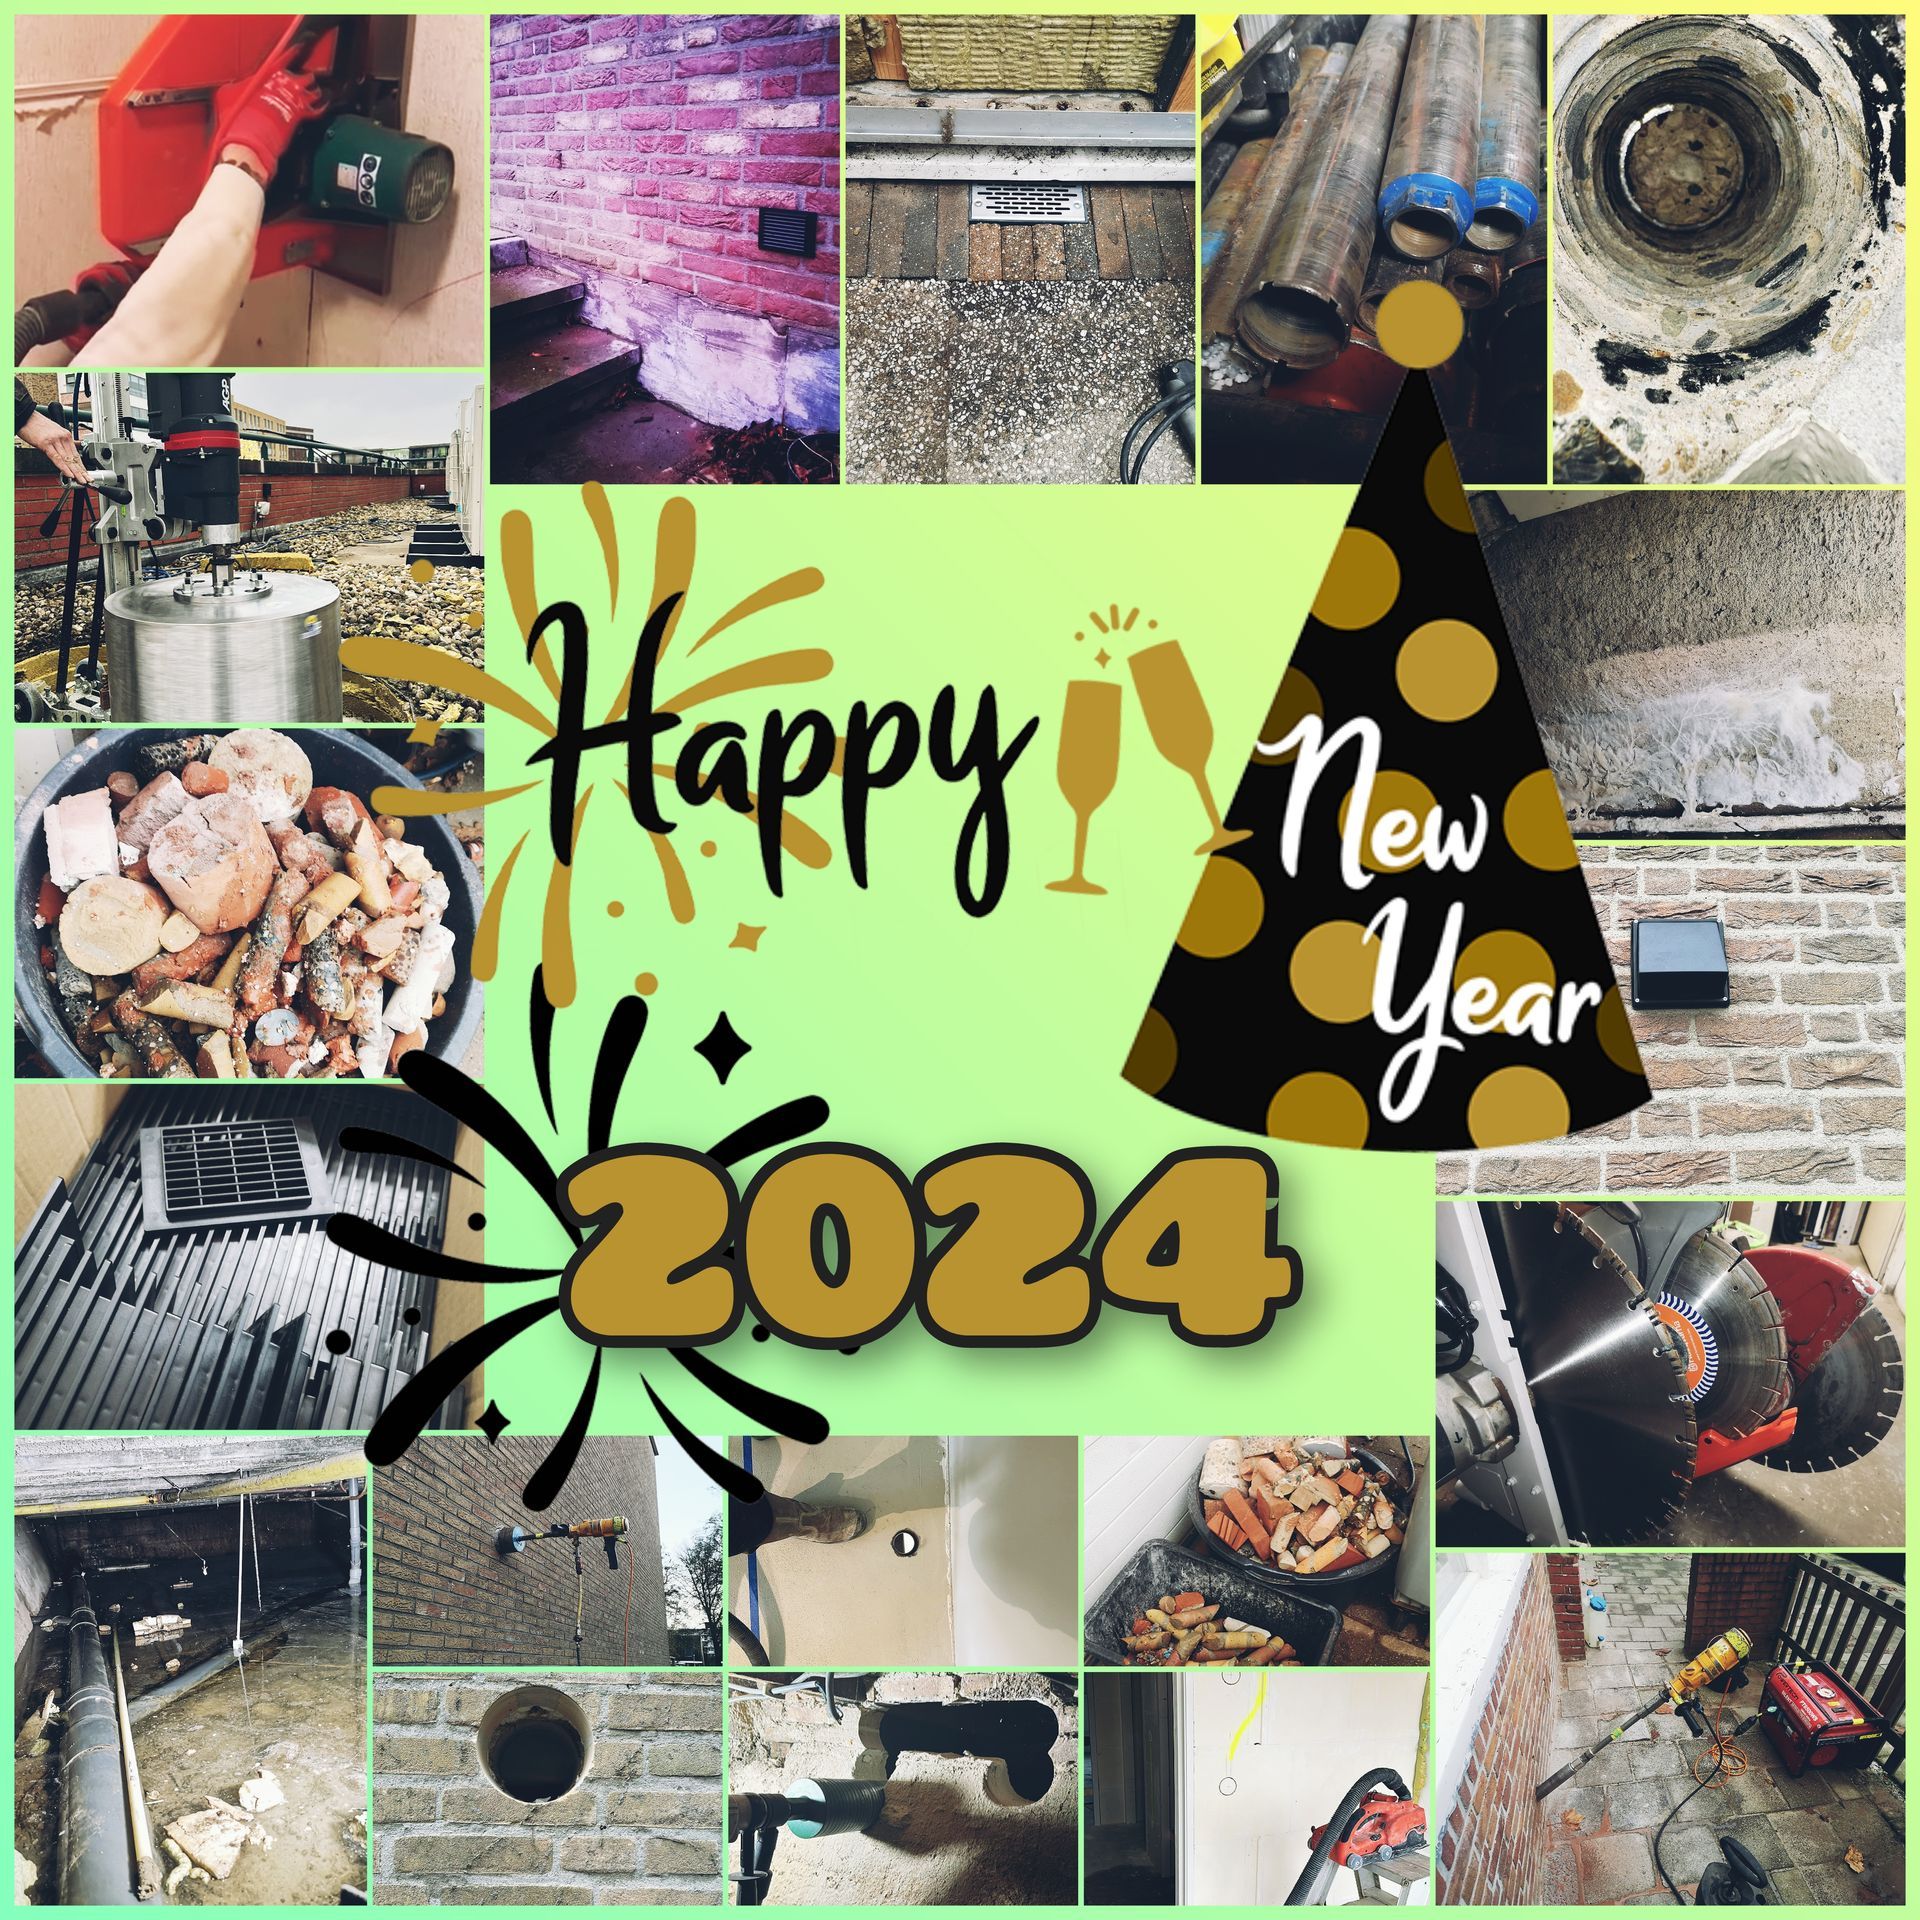 Boorbedrijf Drillpro Nederland wenst een gelukkig Nieuwjaar 2024 